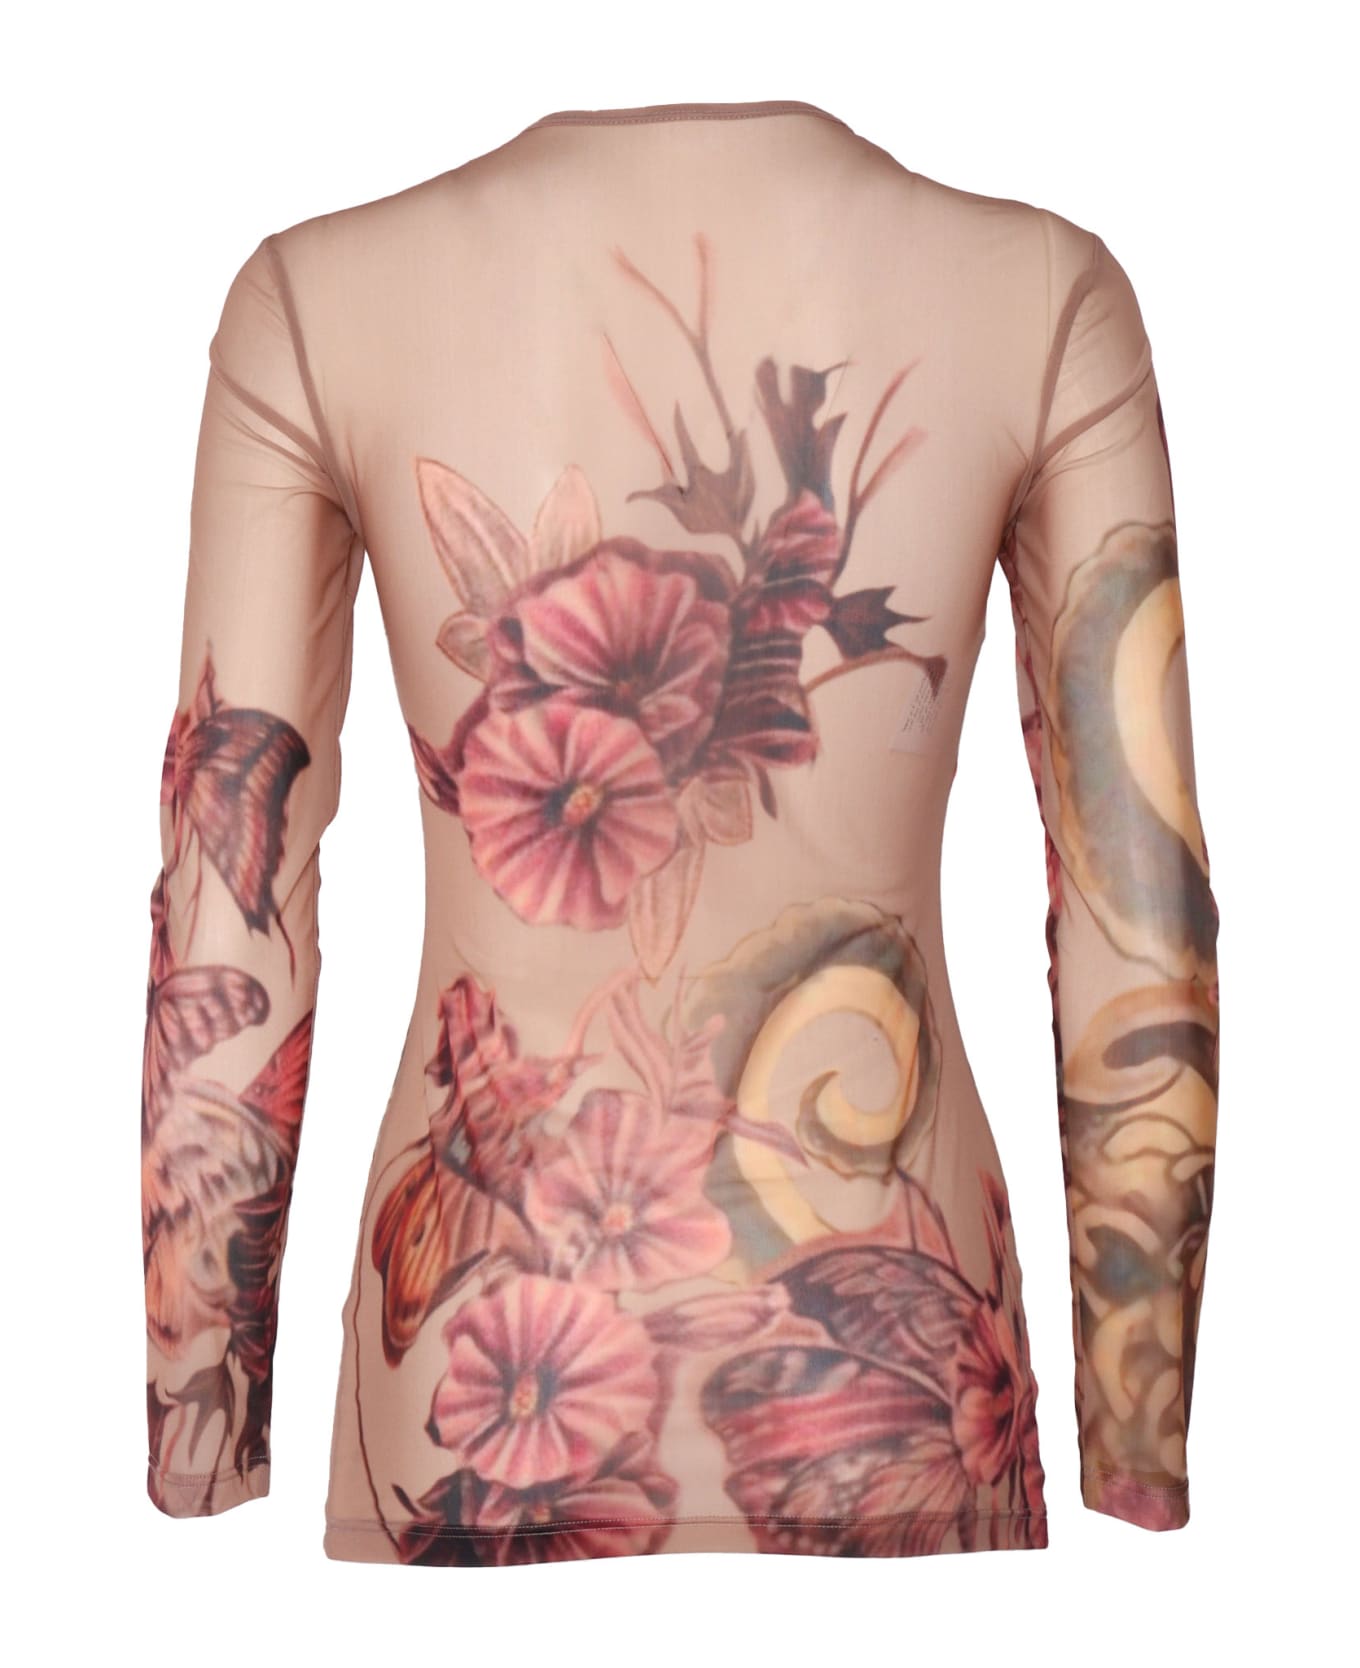 Alberta Ferretti Floral Tattoo Print T-shirt - PINK